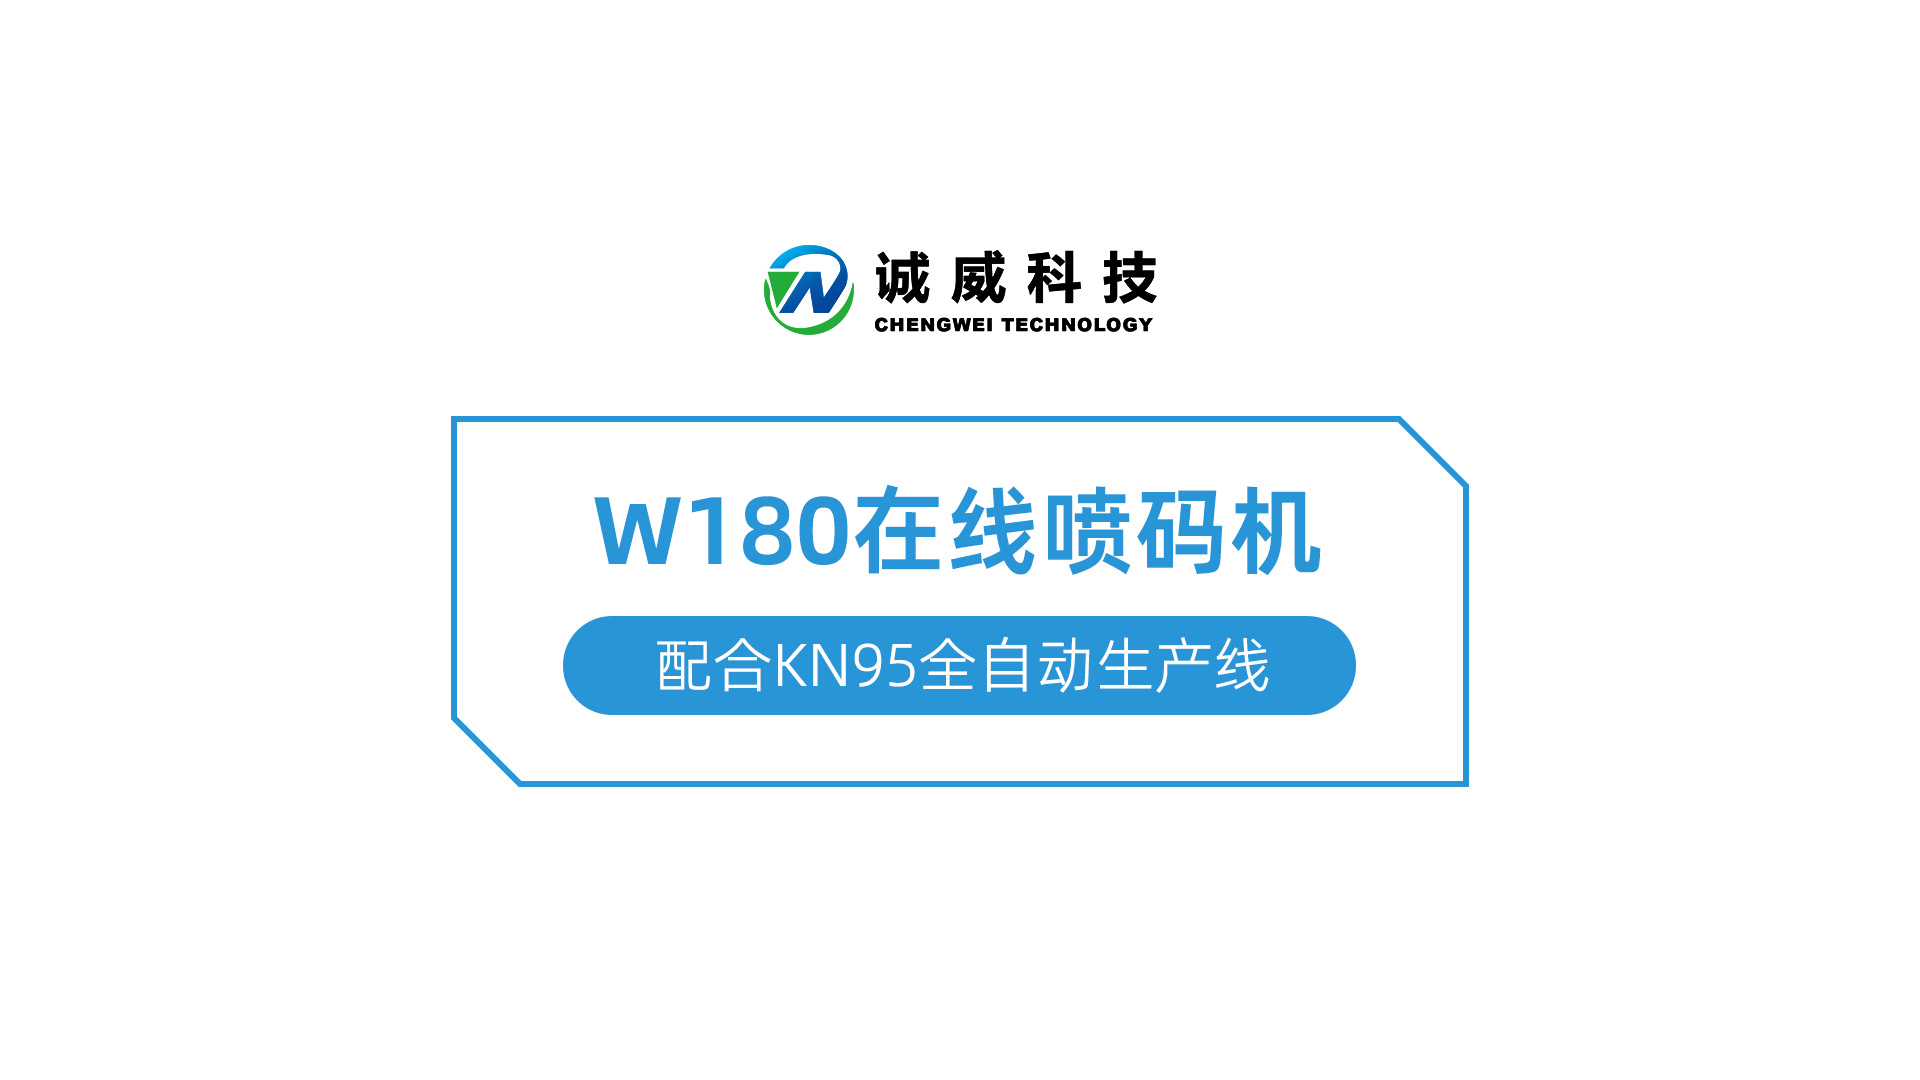 W180在线喷码机-配合KN95全自动生产线.jpg